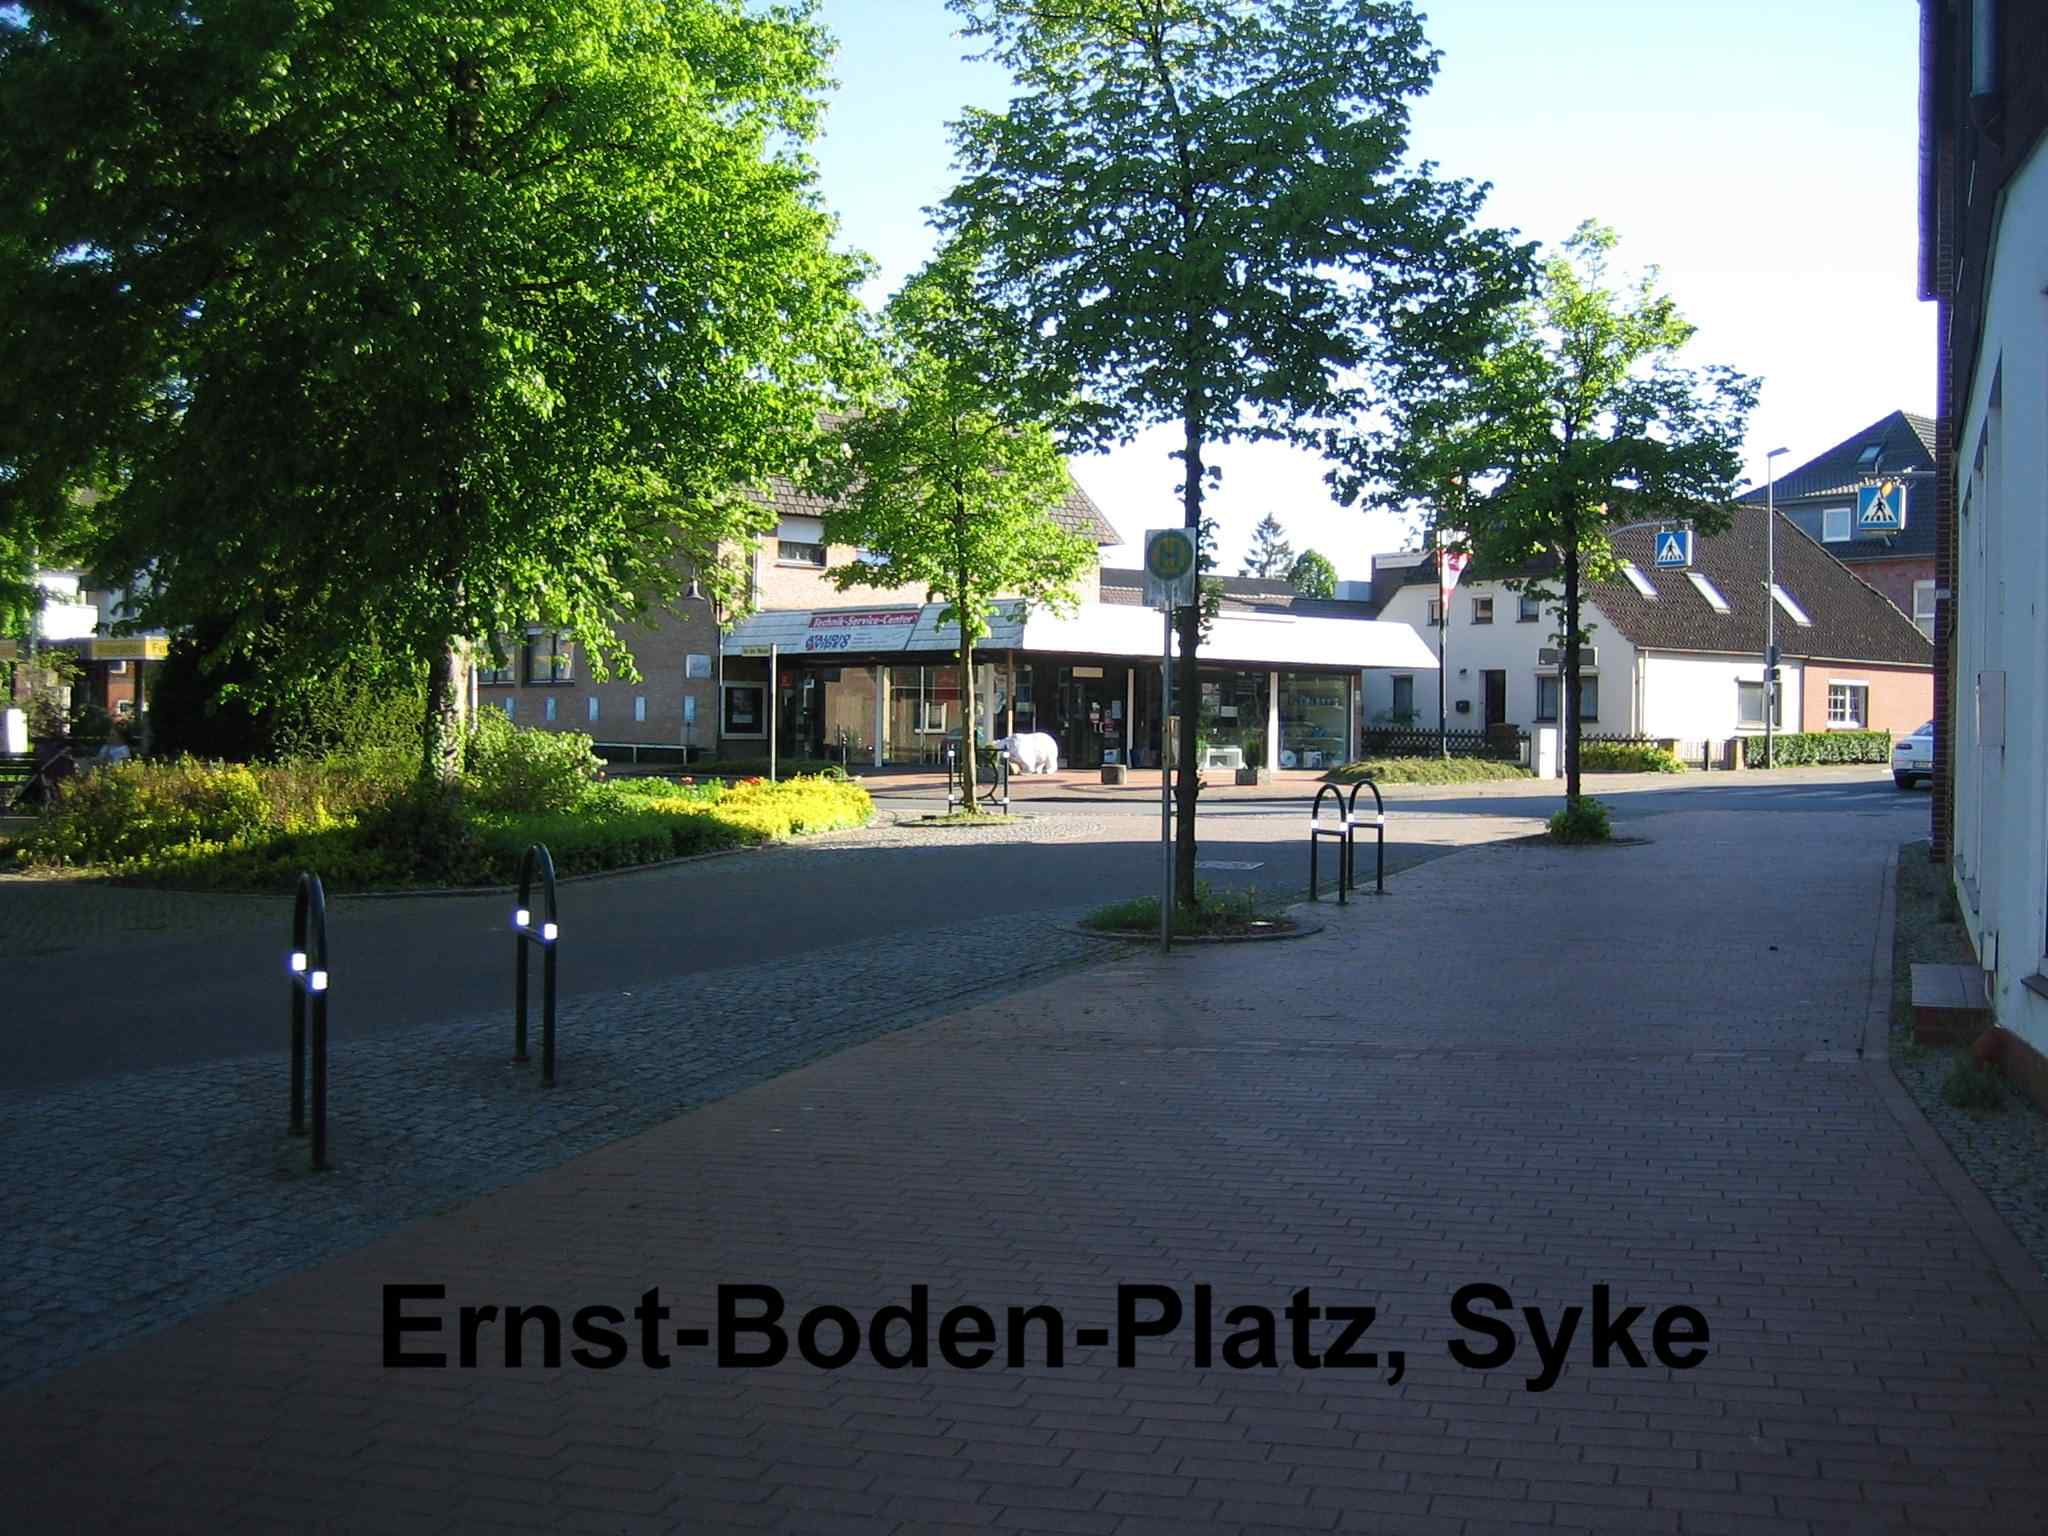 186-02_Ernst-Boden-Platz_1.jpg